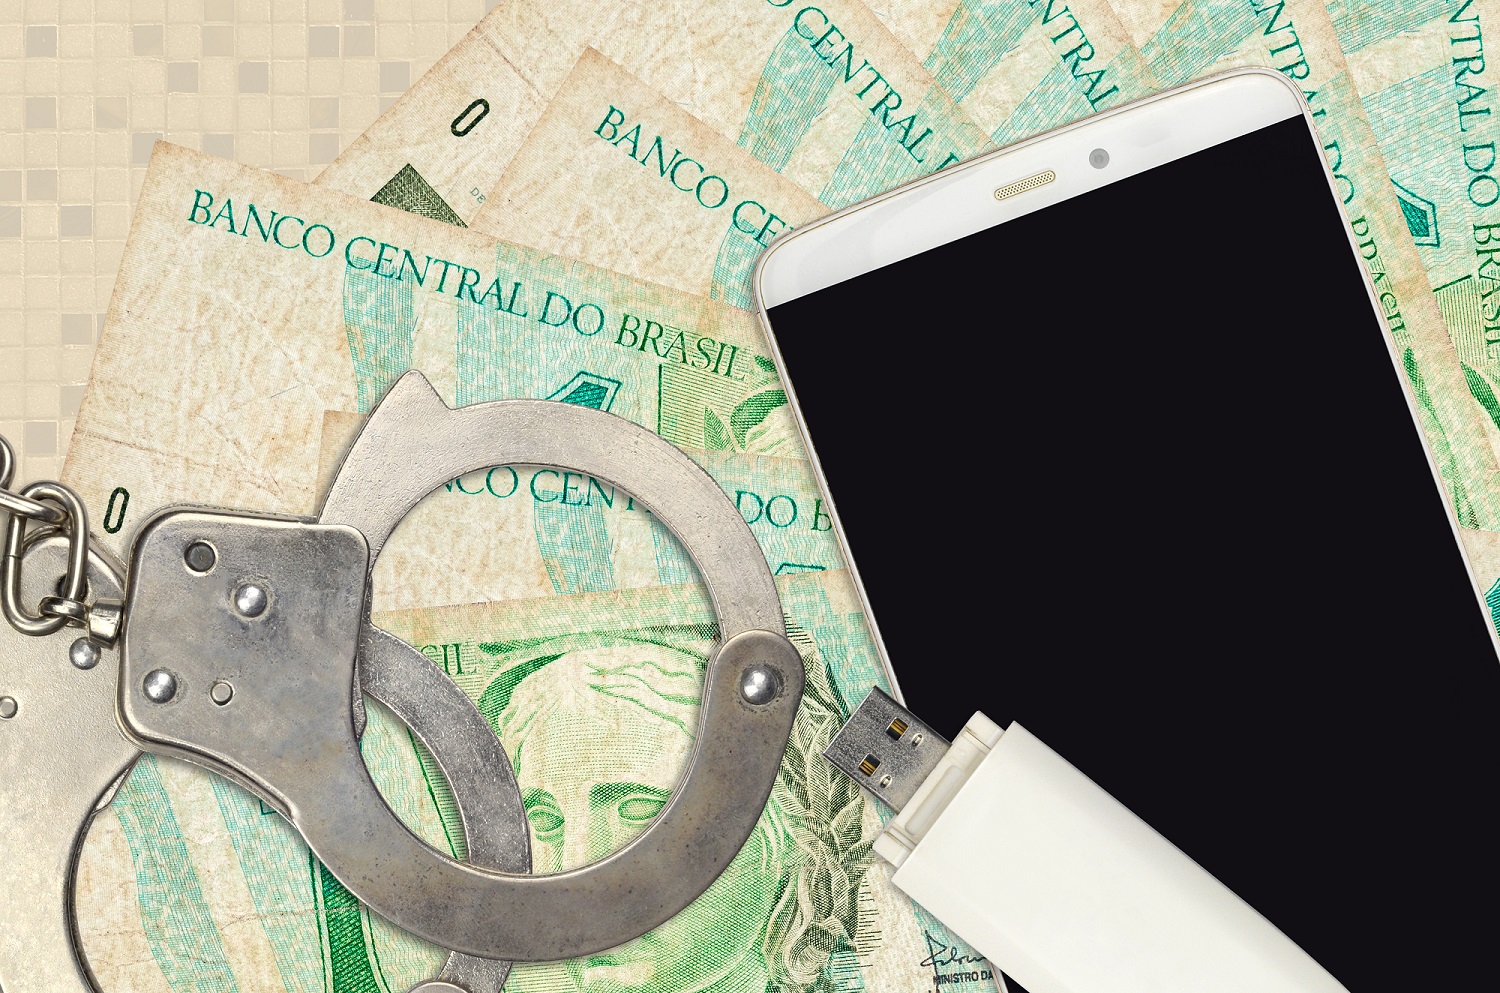 На куче бразильских банкнот лежат USB-накопитель и смартфон вместе с парой наручников, а также фотографии предполагаемых мошенников.